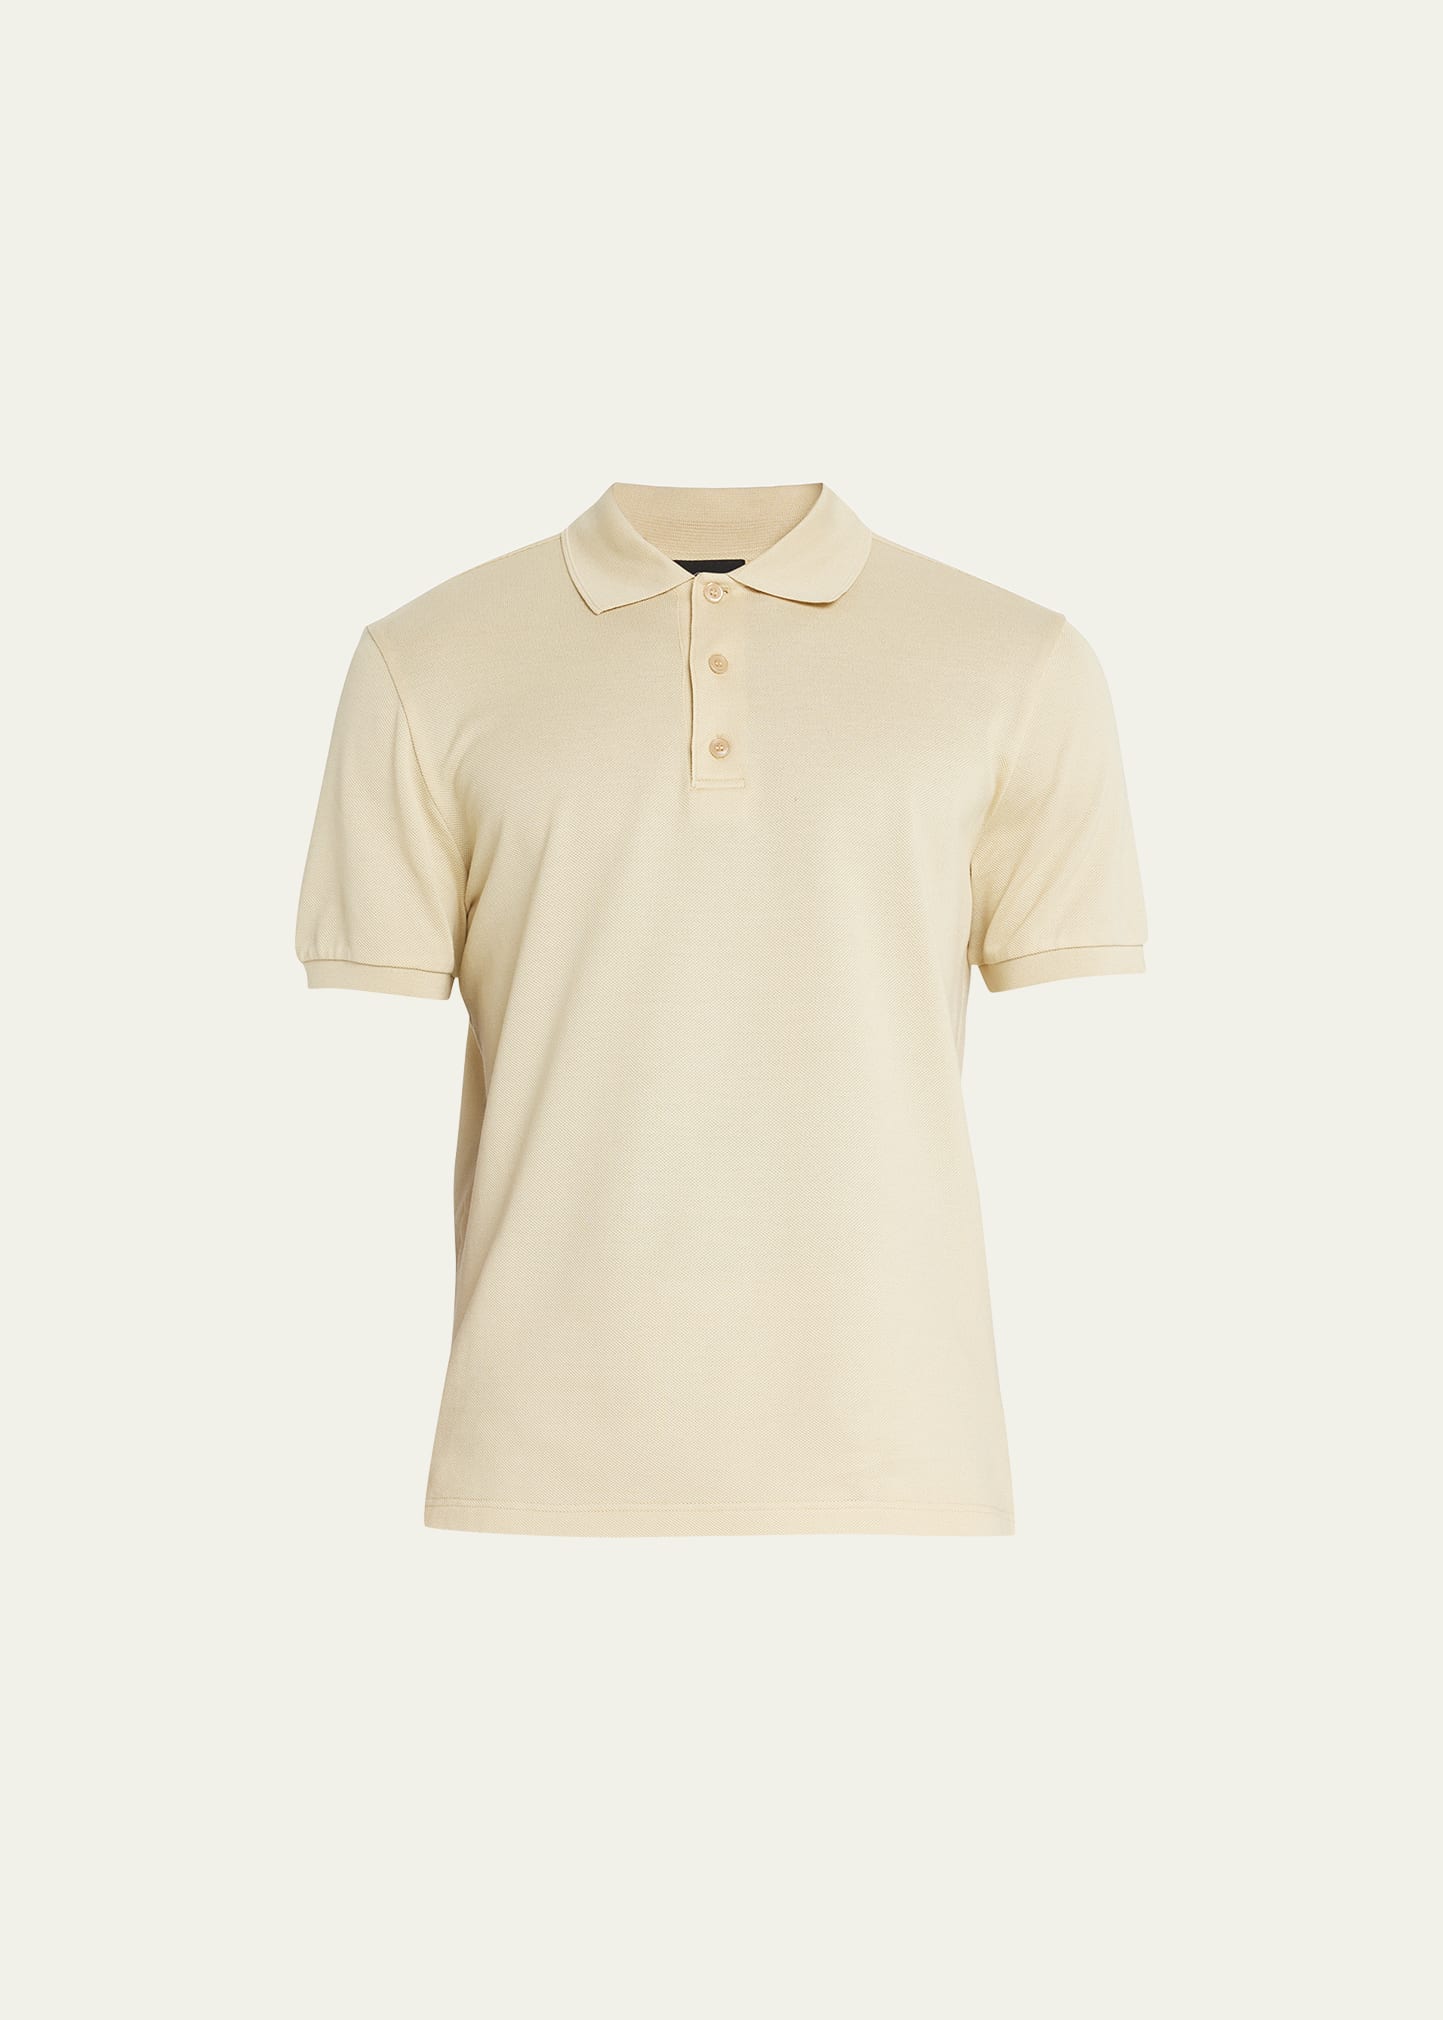 Brioni Men's Pique Polo Shirt In Lemon